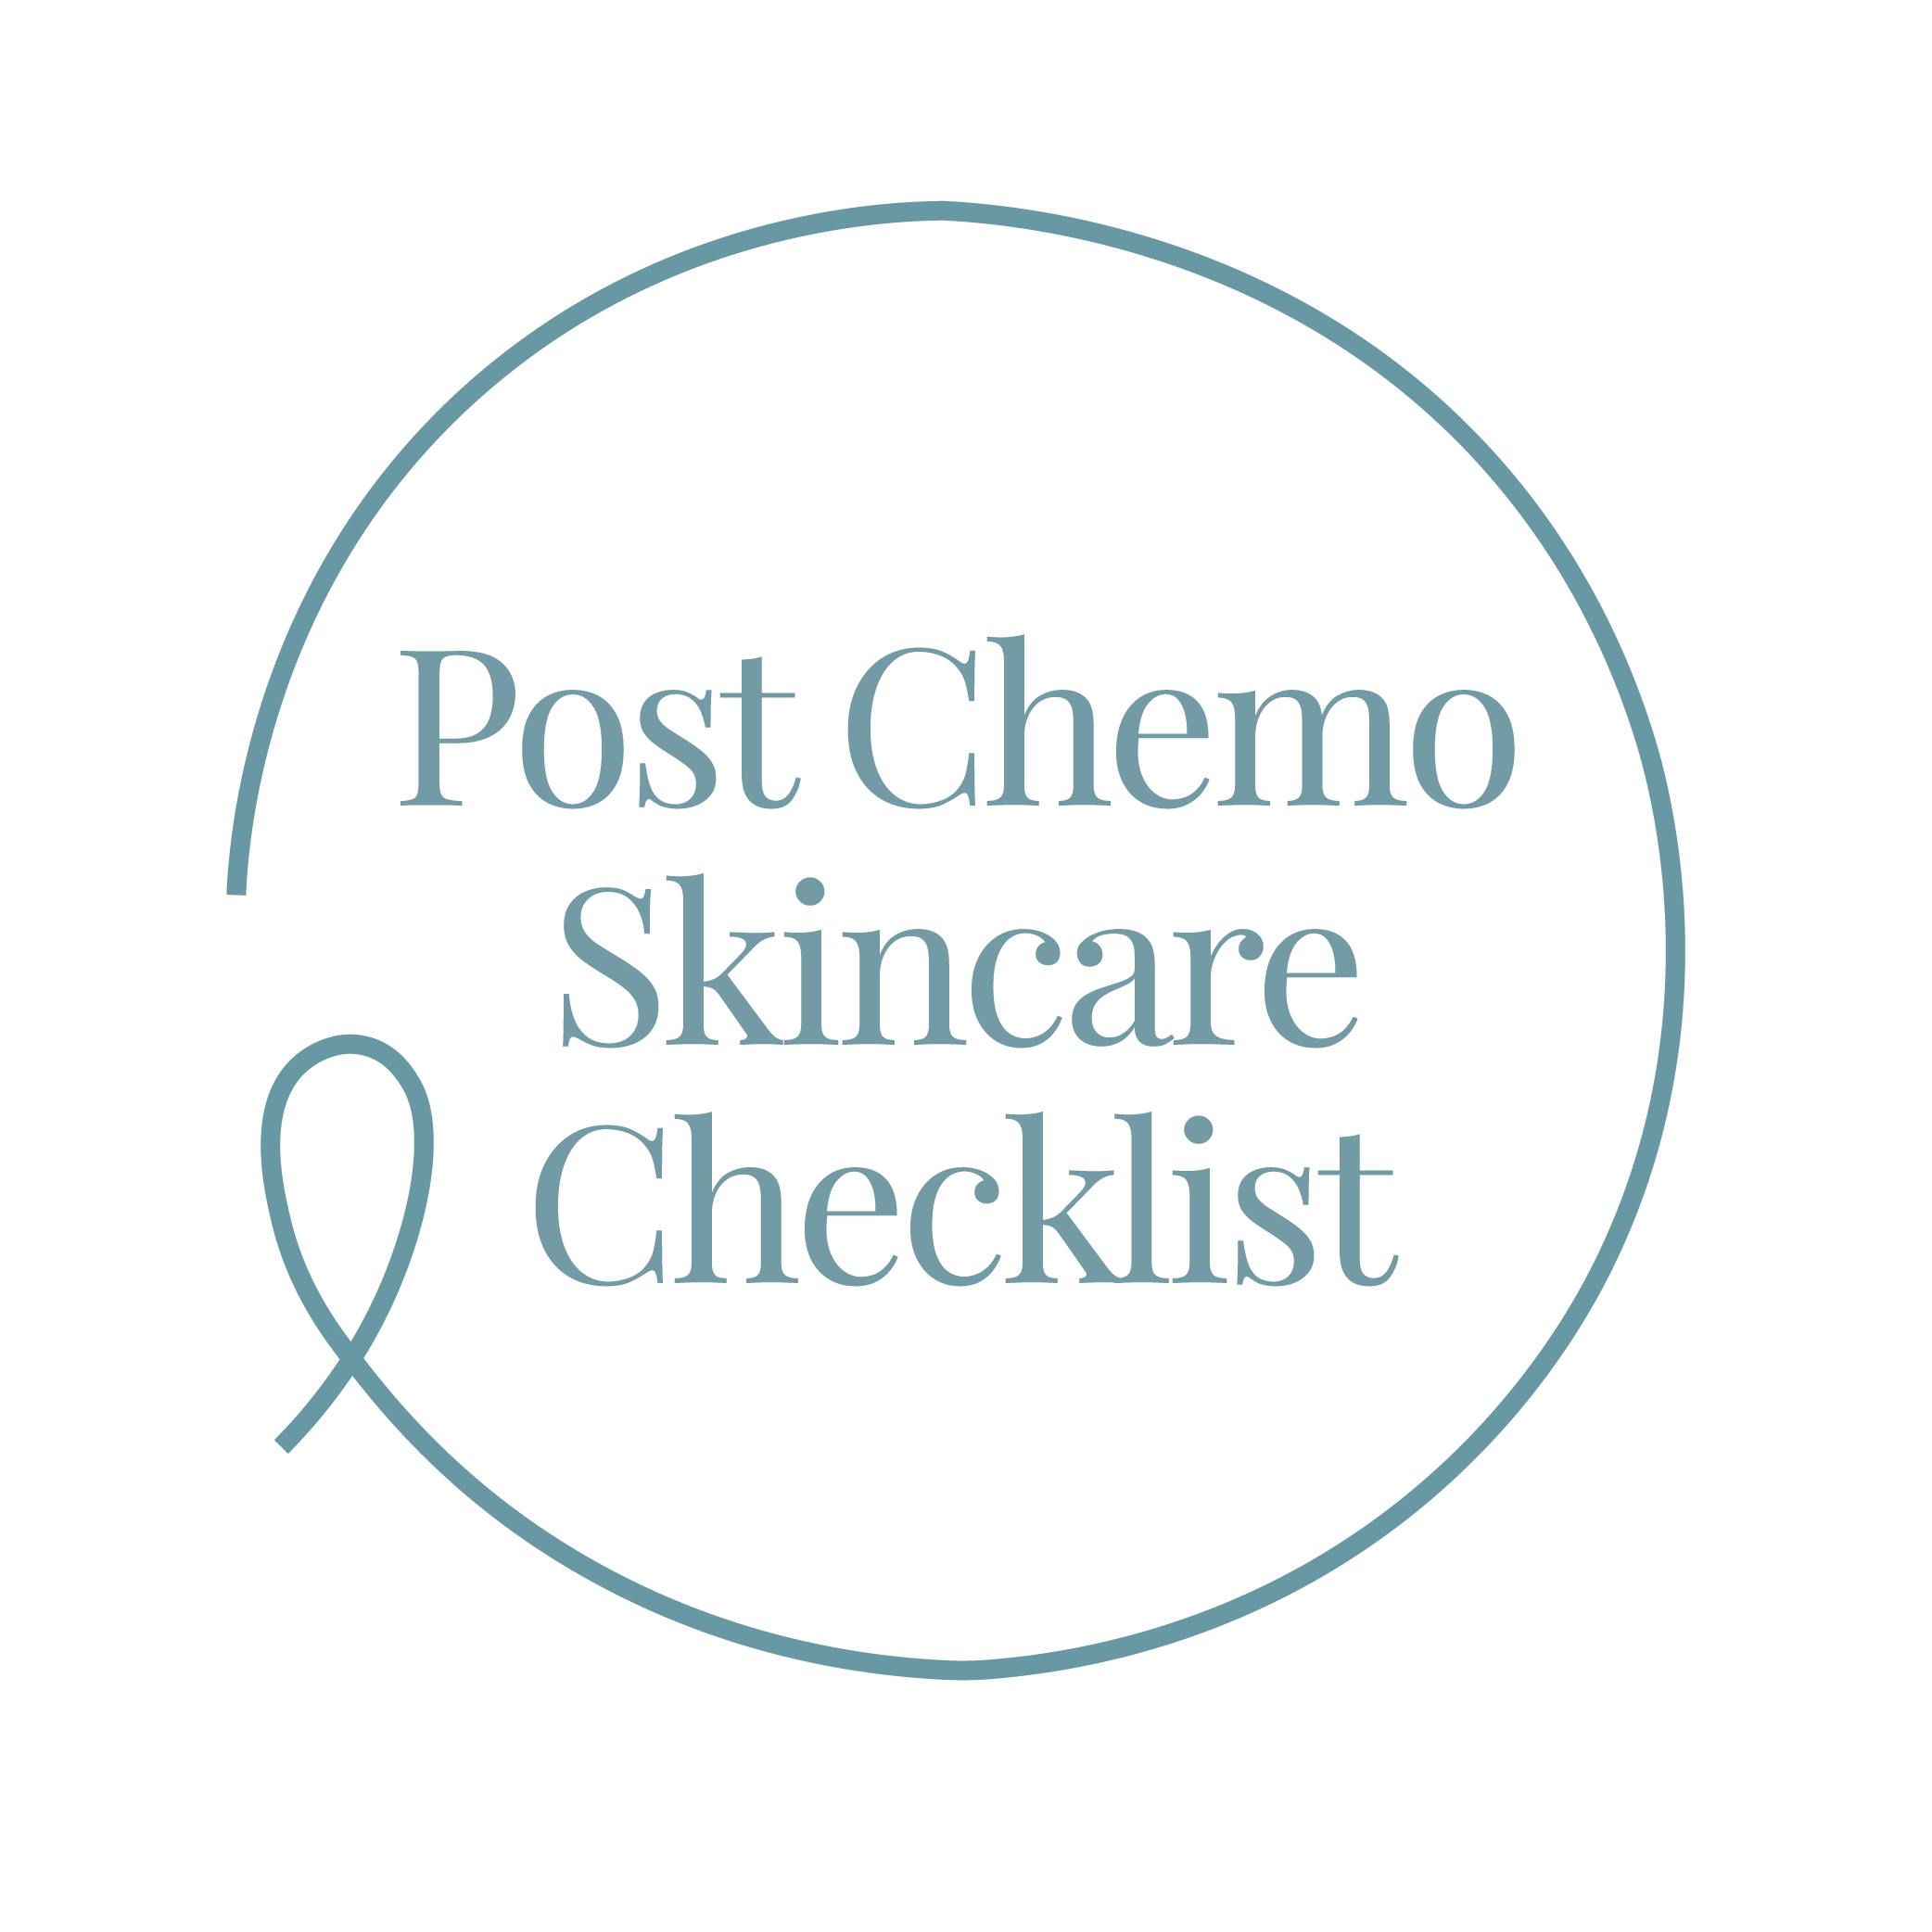 Post Chemo Skincare Checklist